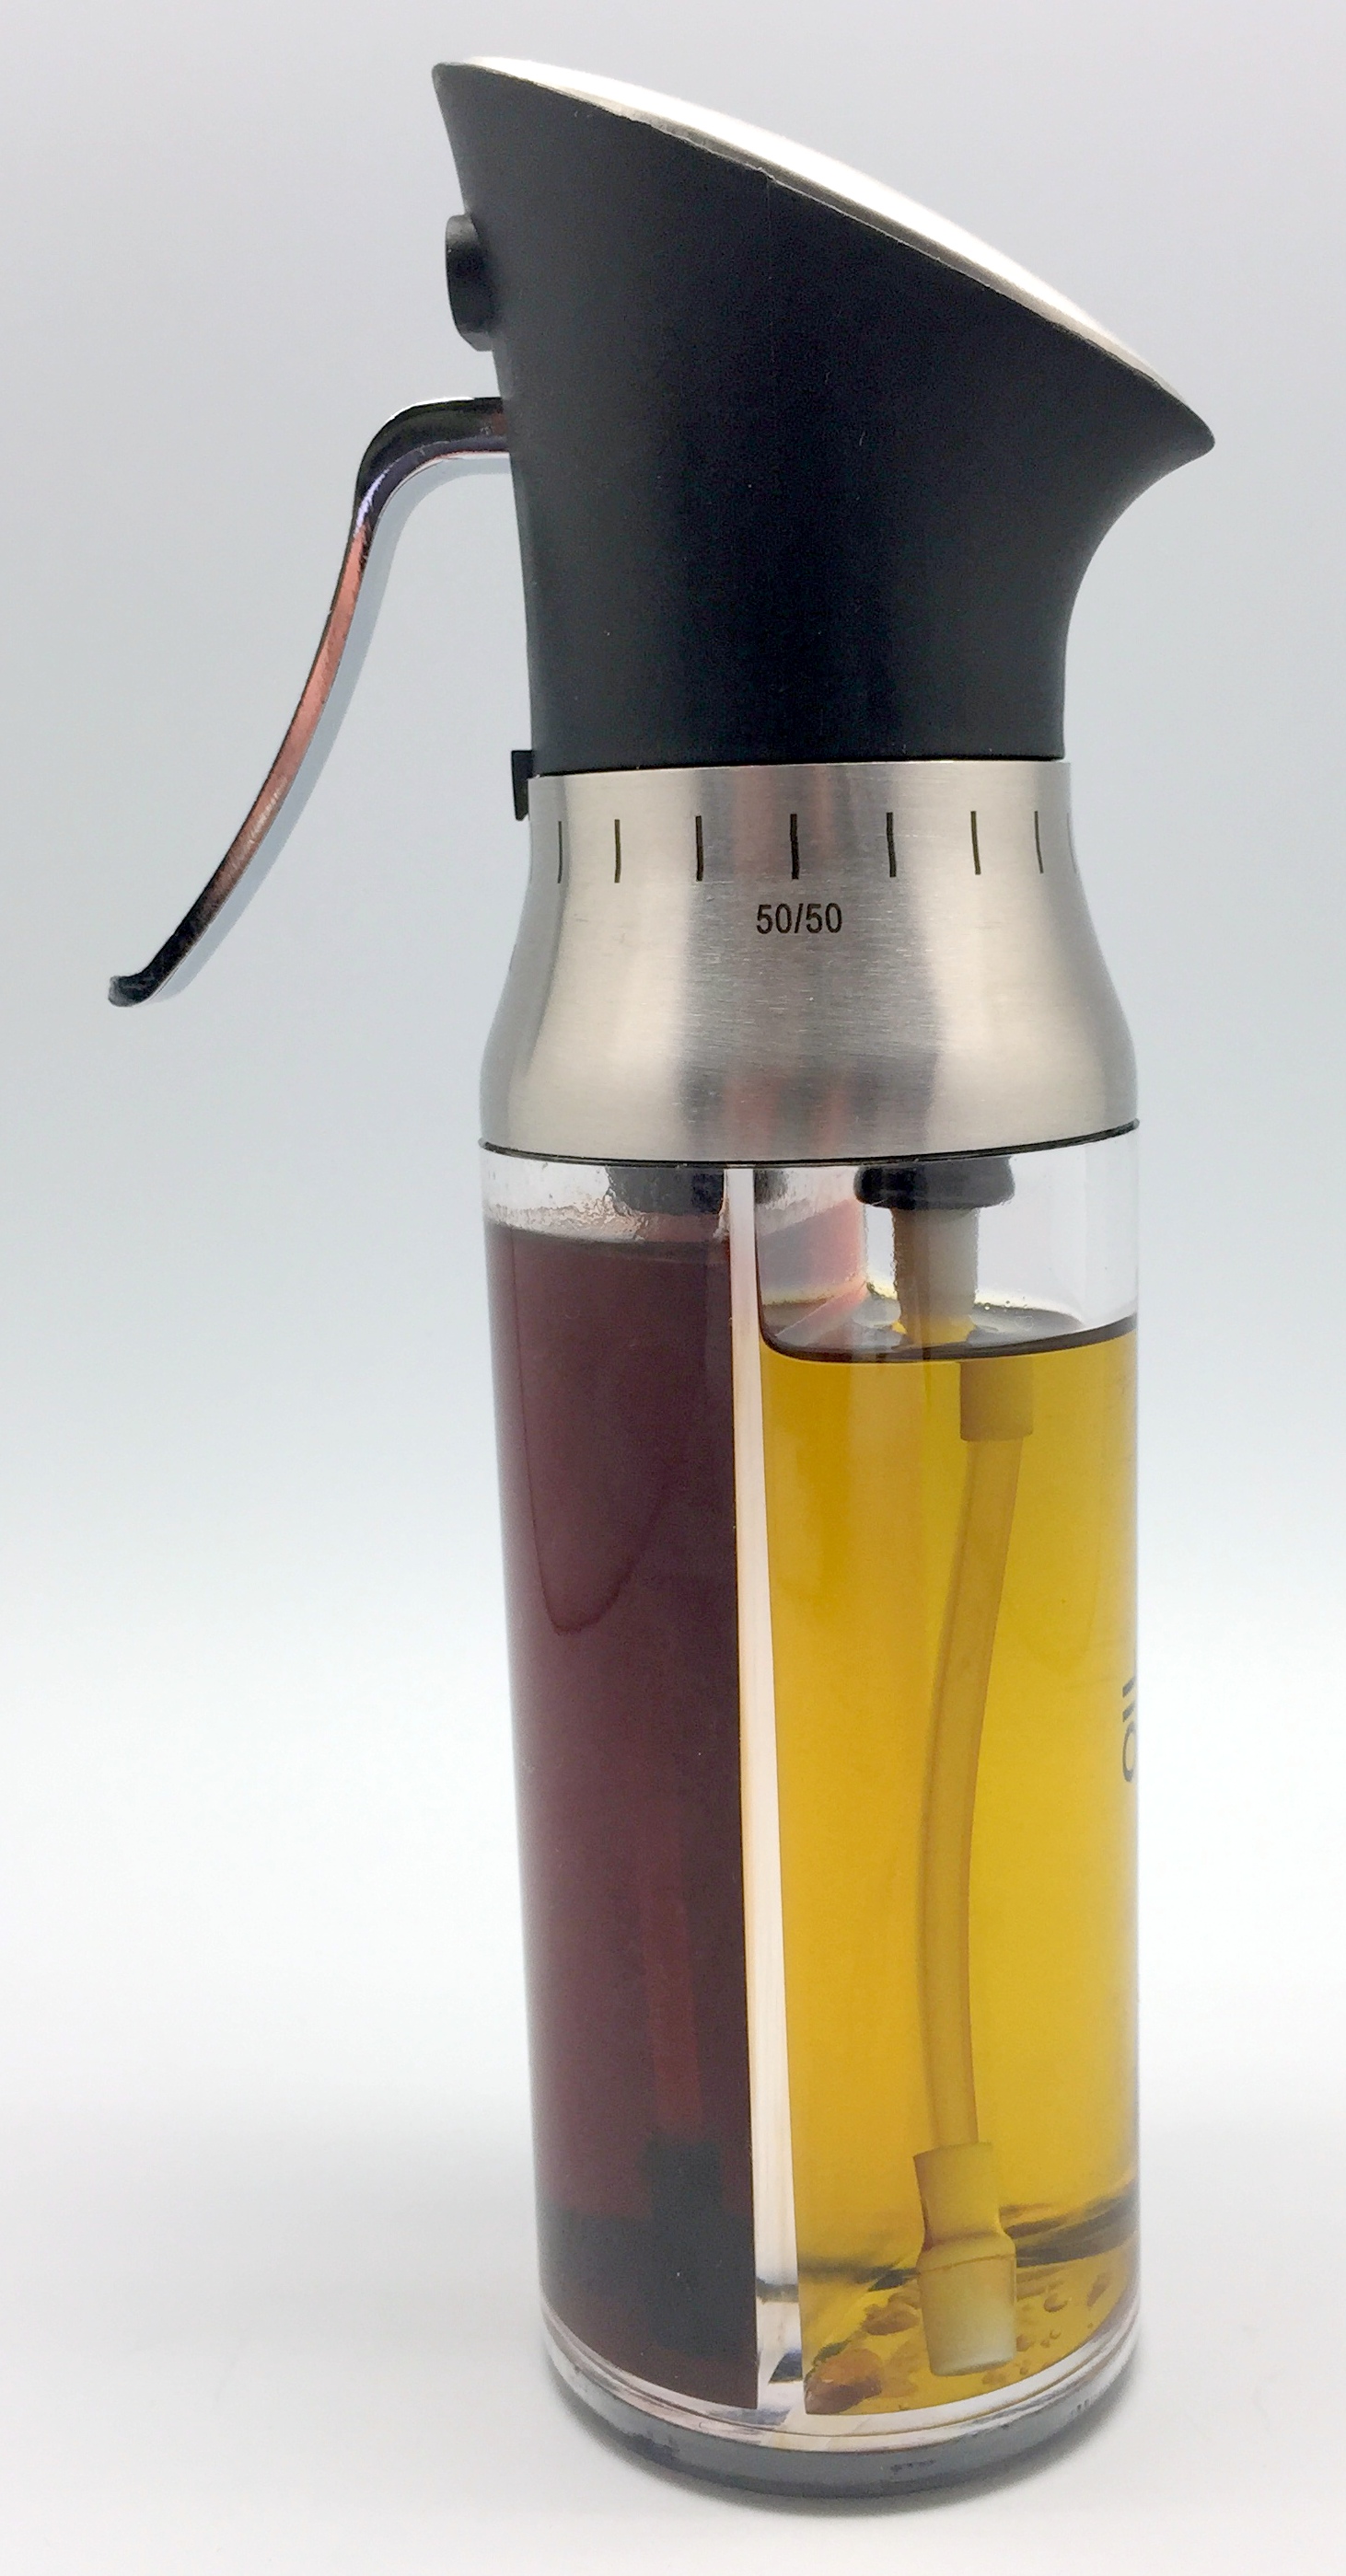 Vaporisateur huile et vinaigre - Markindus